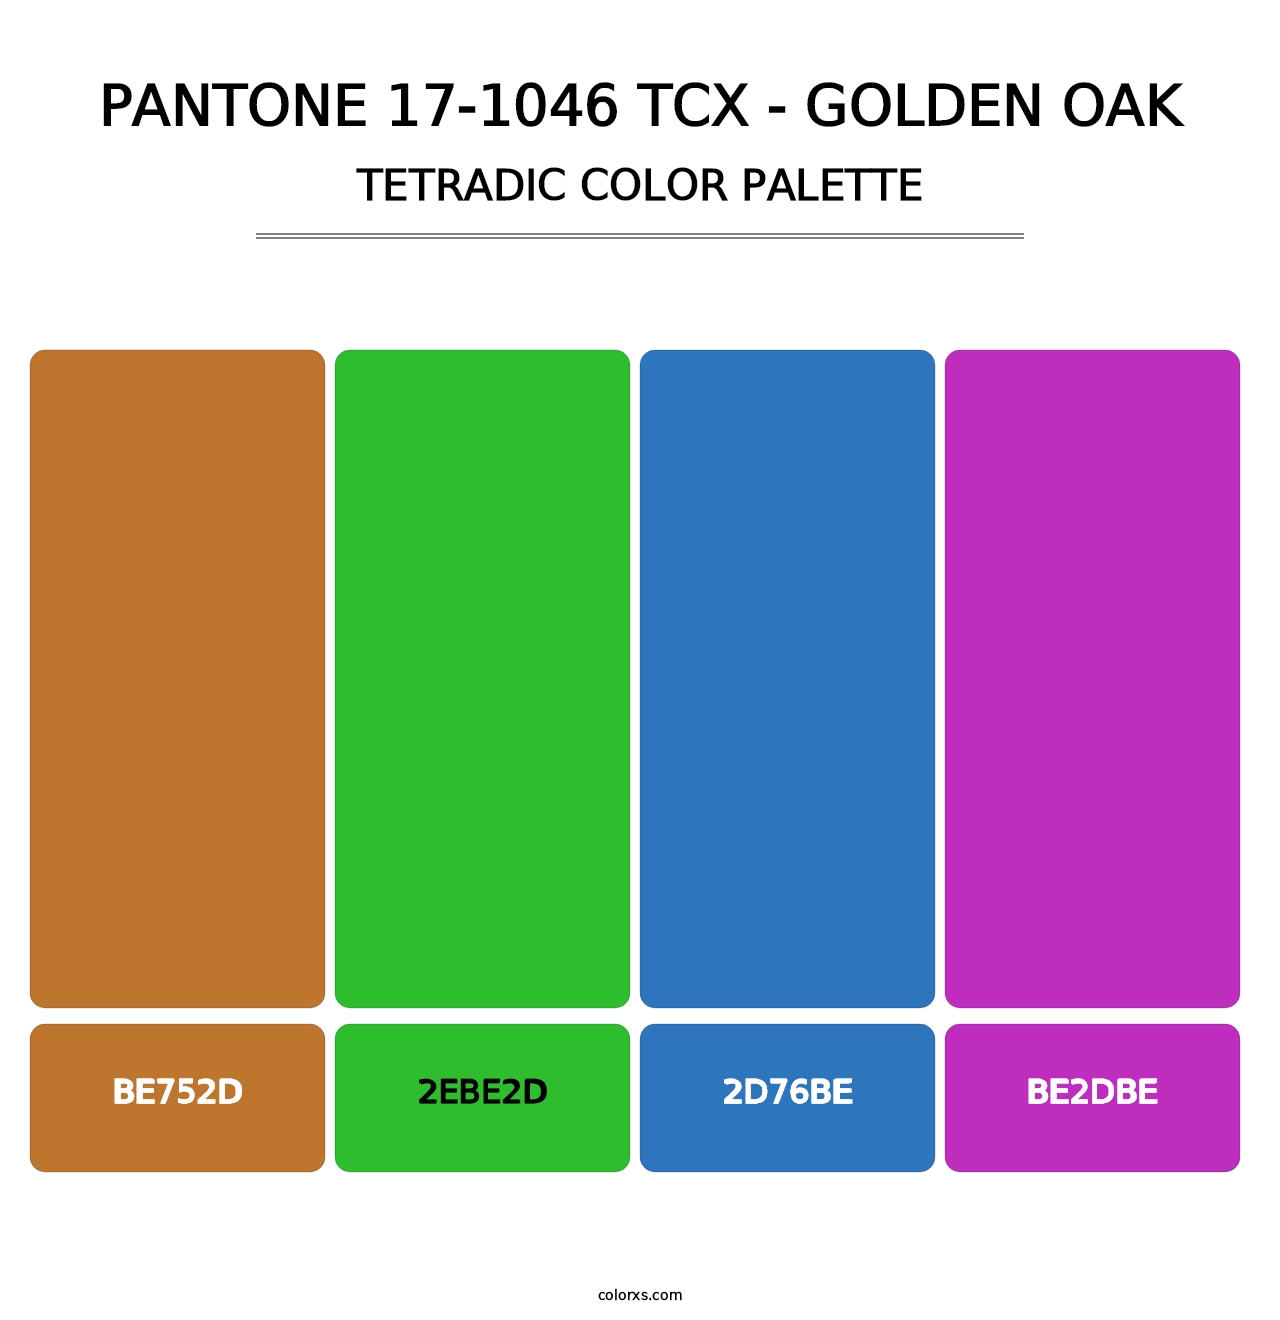 PANTONE 17-1046 TCX - Golden Oak - Tetradic Color Palette